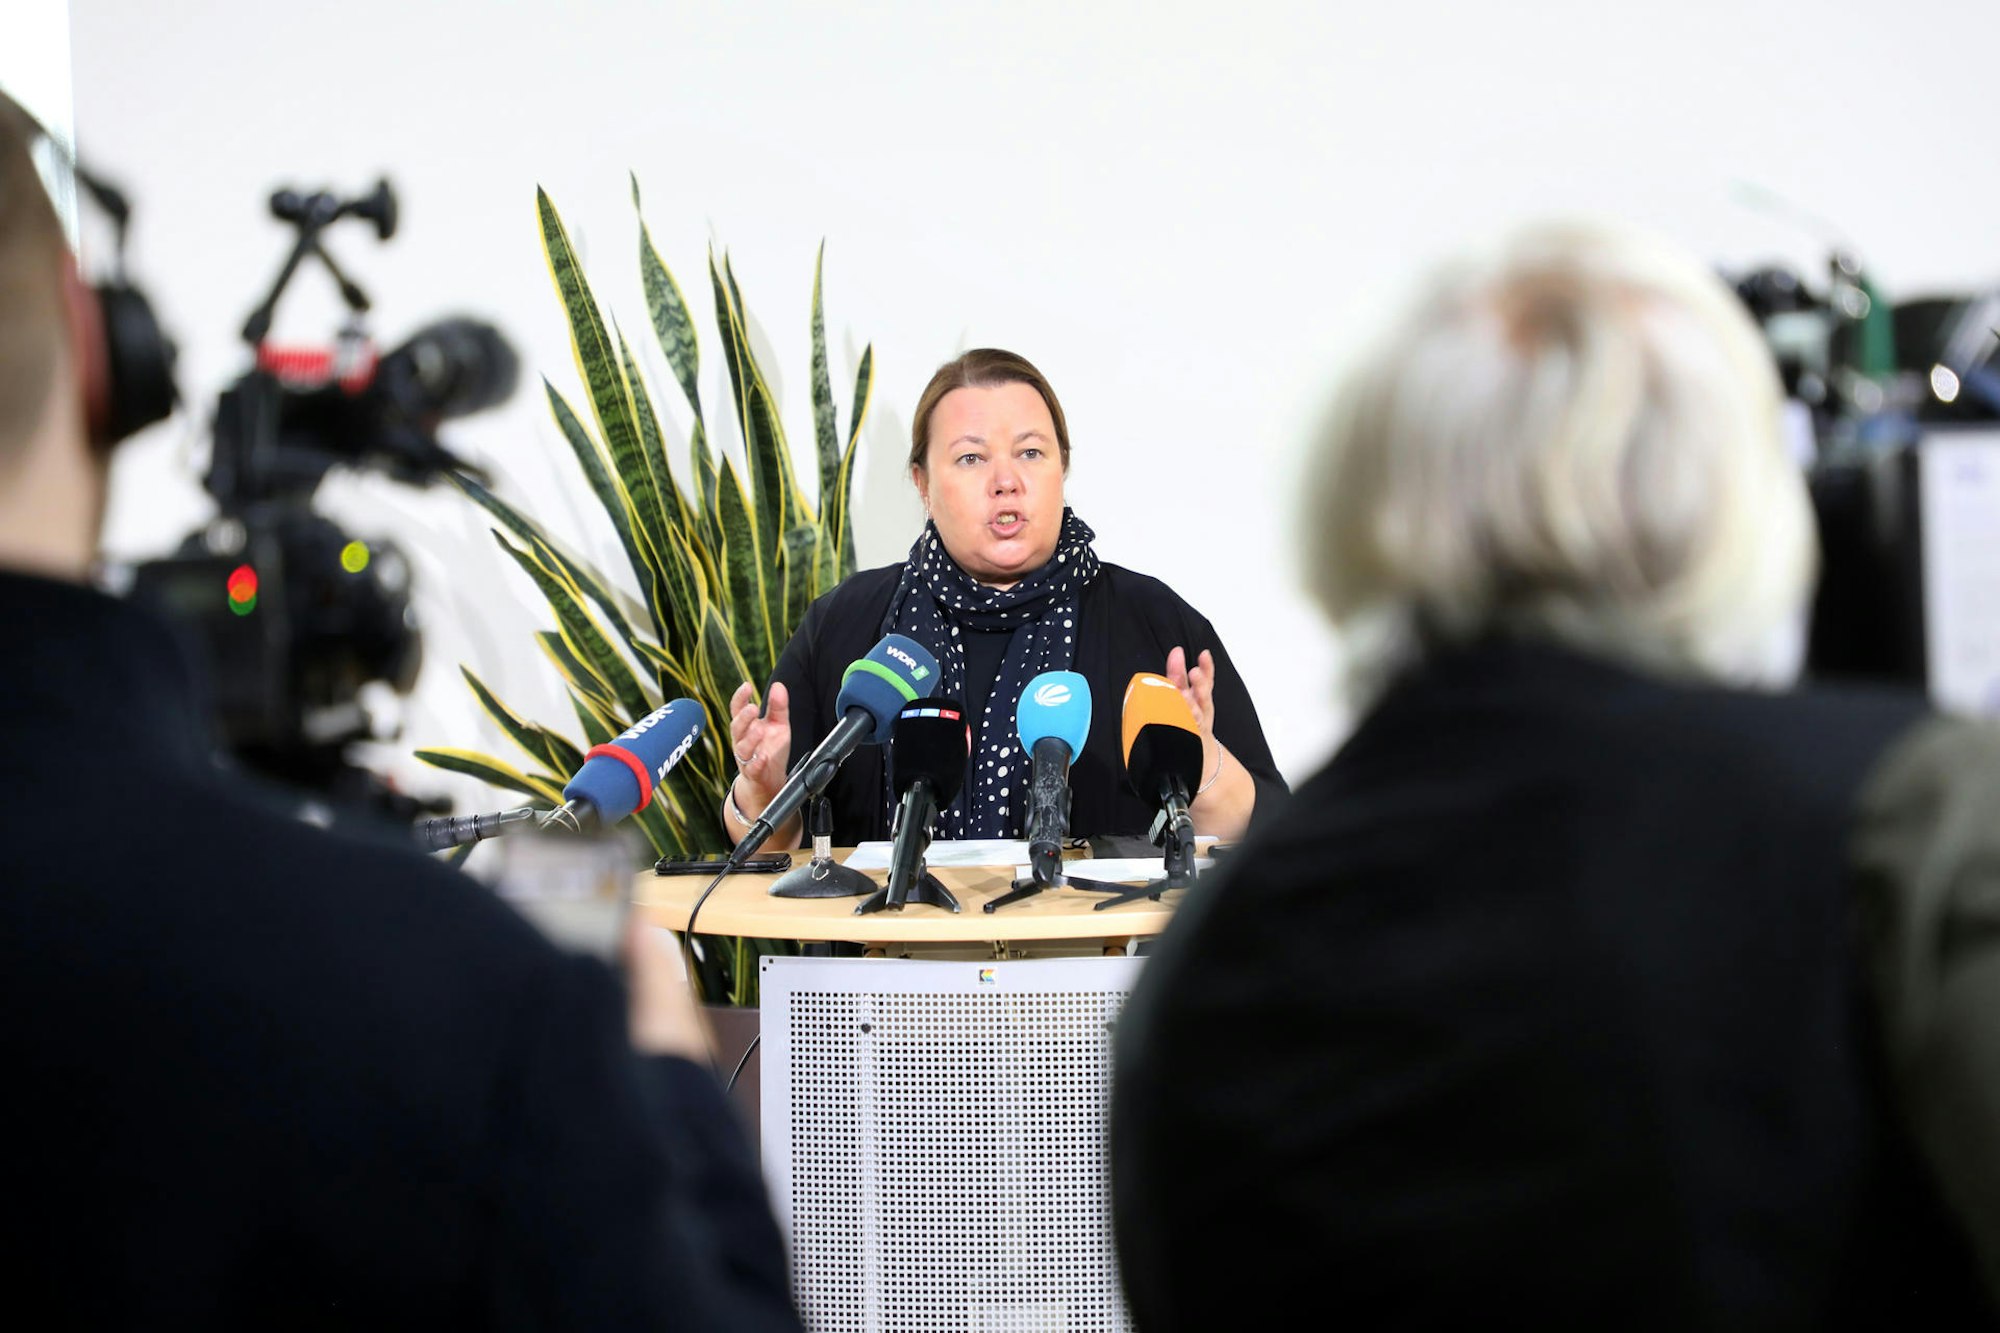 Noch am Morgen hatte die Ministerin Heinen-Esser einen Rücktritt vor Pressevertretern ausgeschlossen.